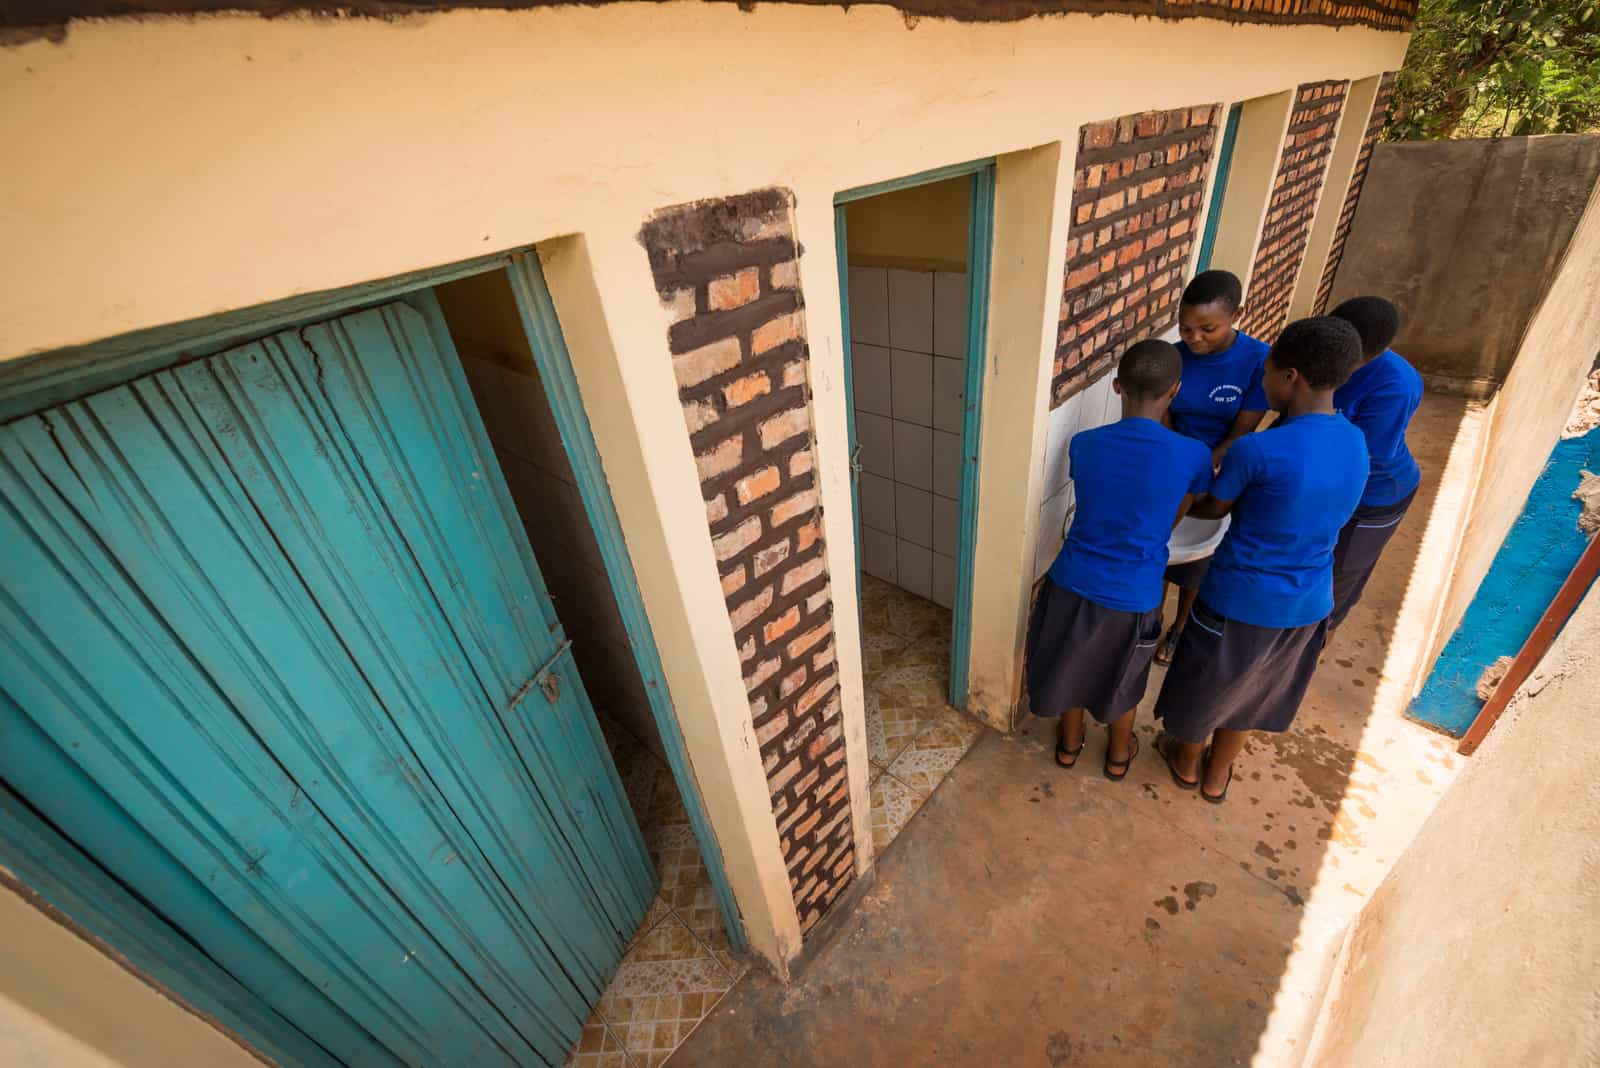 Girls in Rwanda gather around a sink to wash their hands